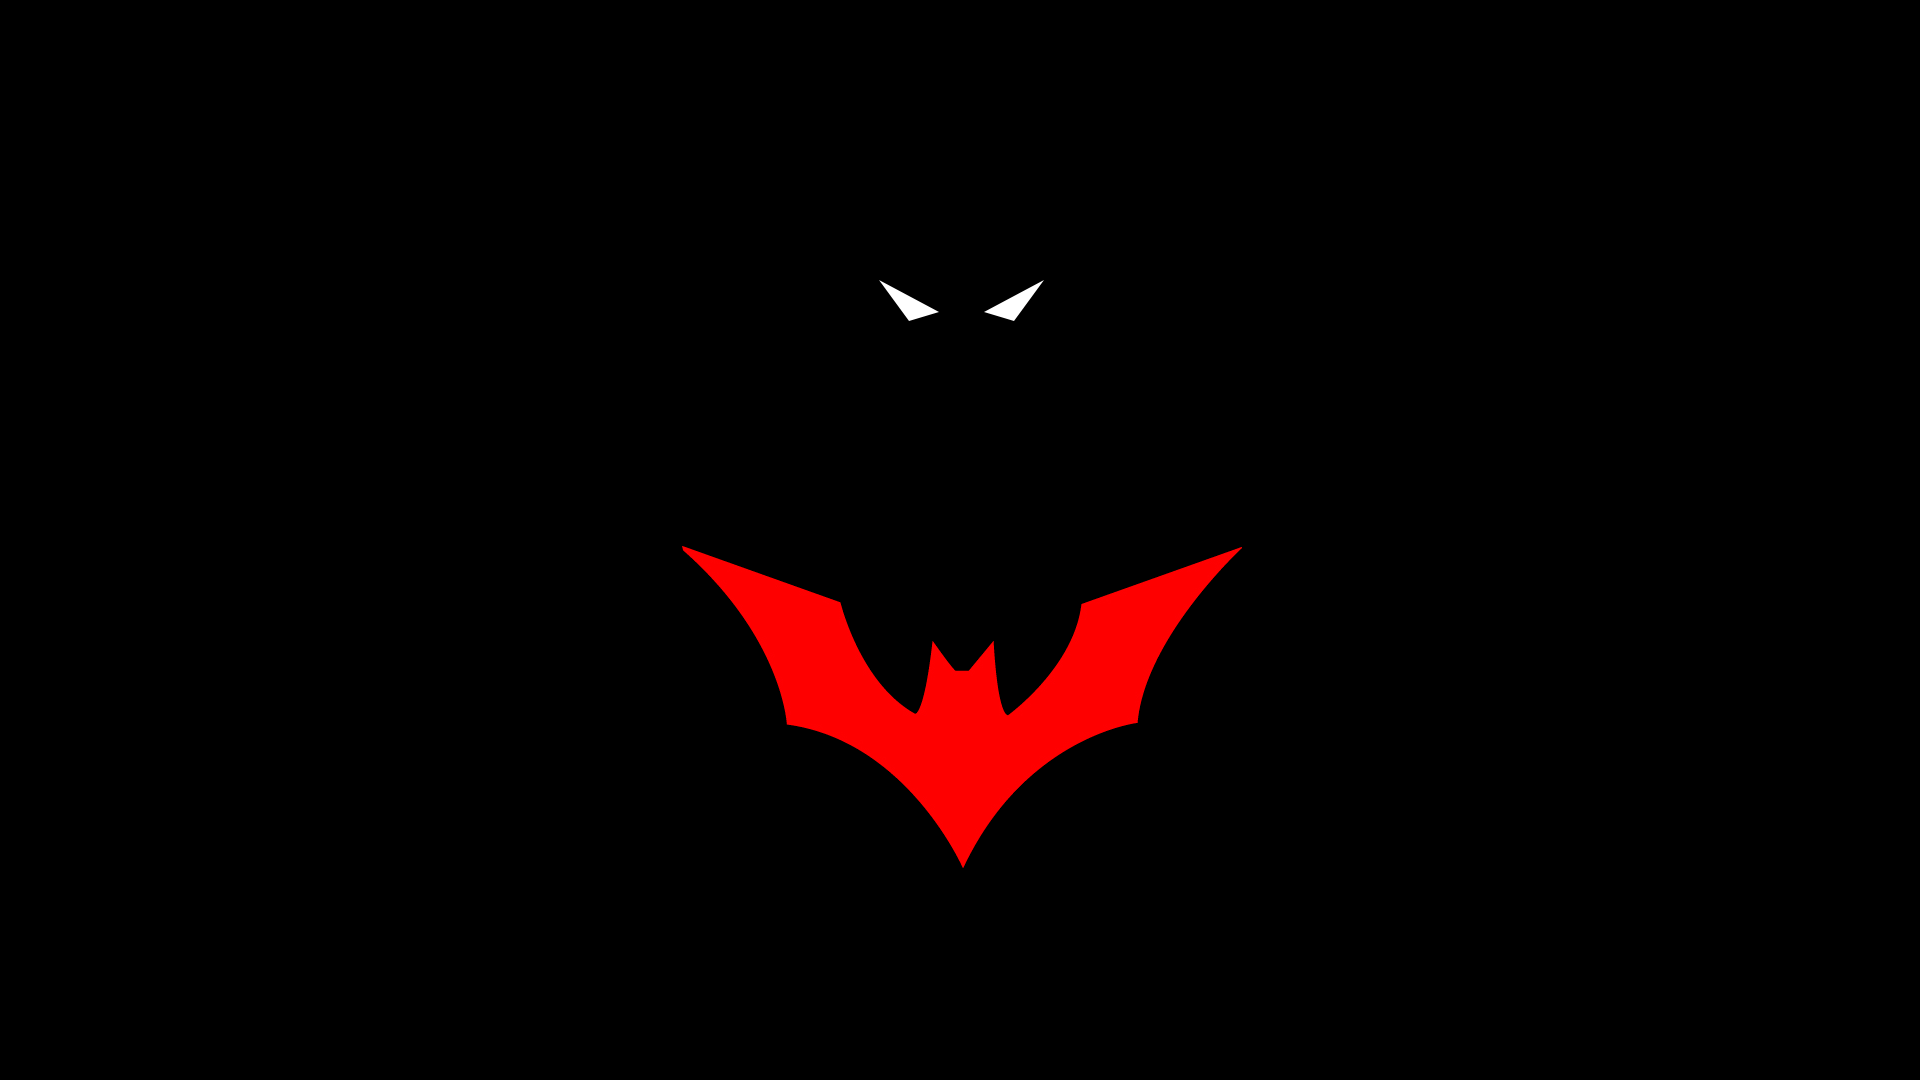 Superman vs Batman Beyond Logo - 50 Batman Logo wallpapers For Free Download (HD 1080p)